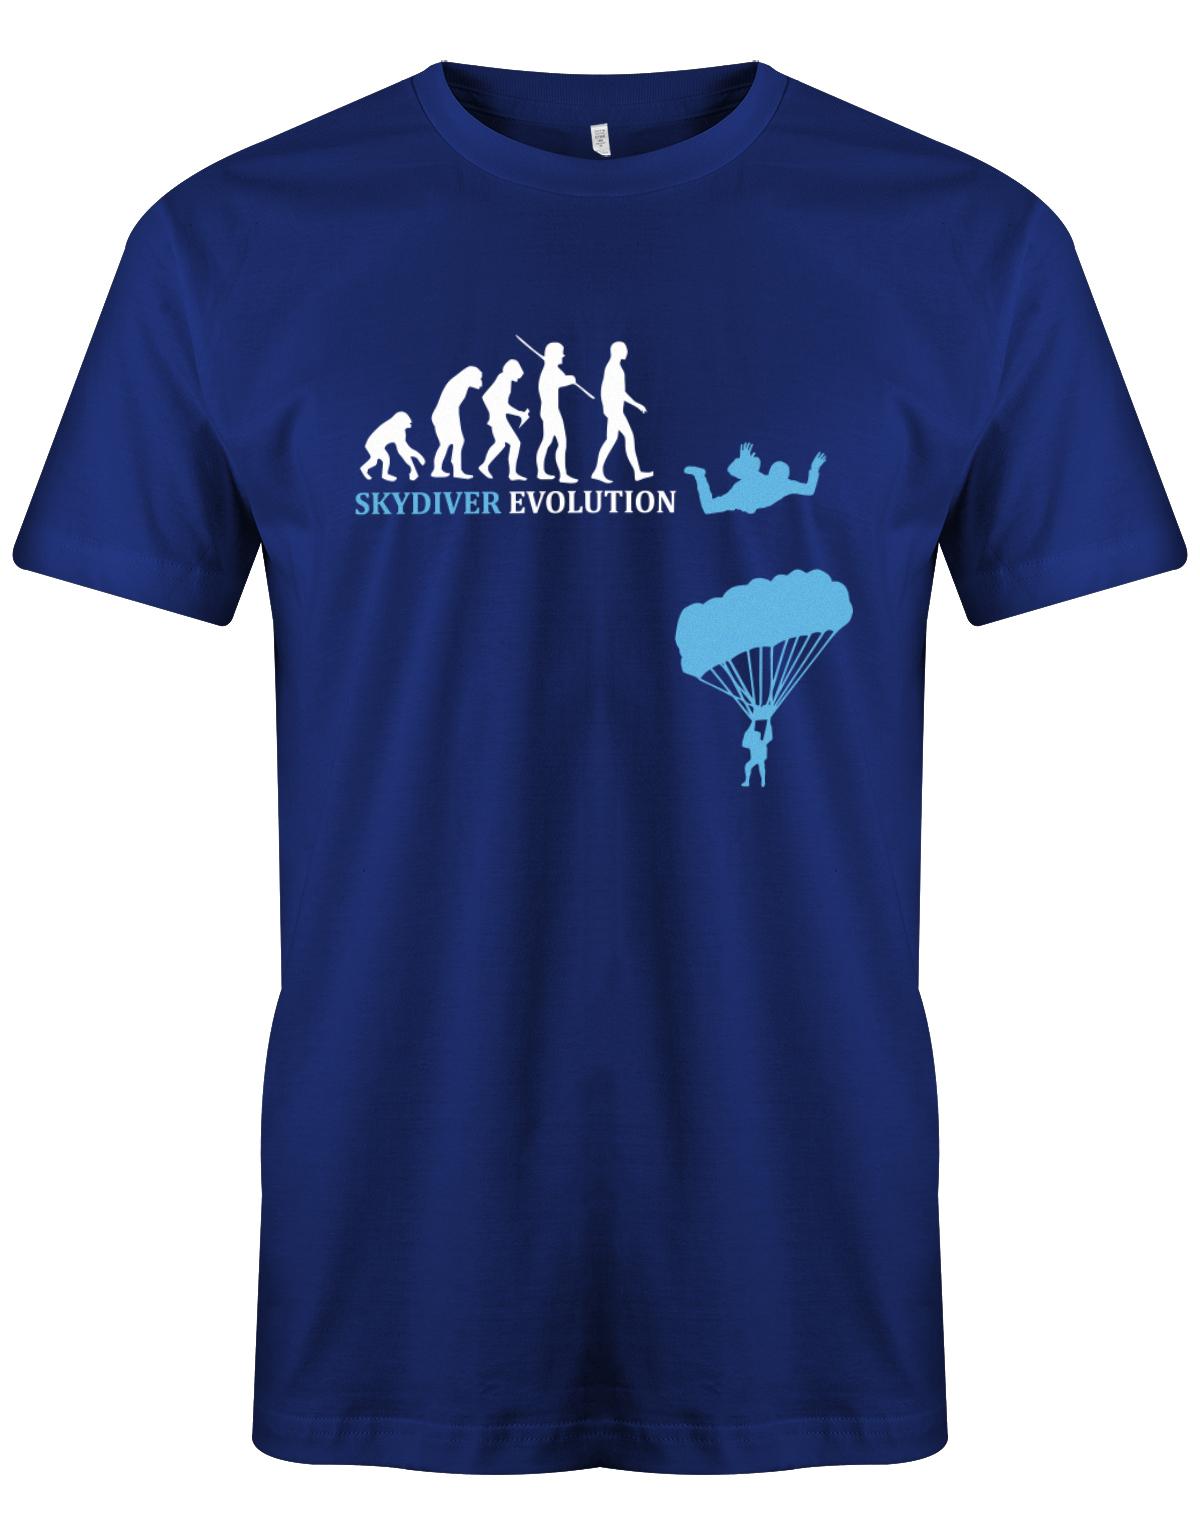 Skydiver-Fallschirmspringer-Evolution-Herren-Shirt-Royalblau